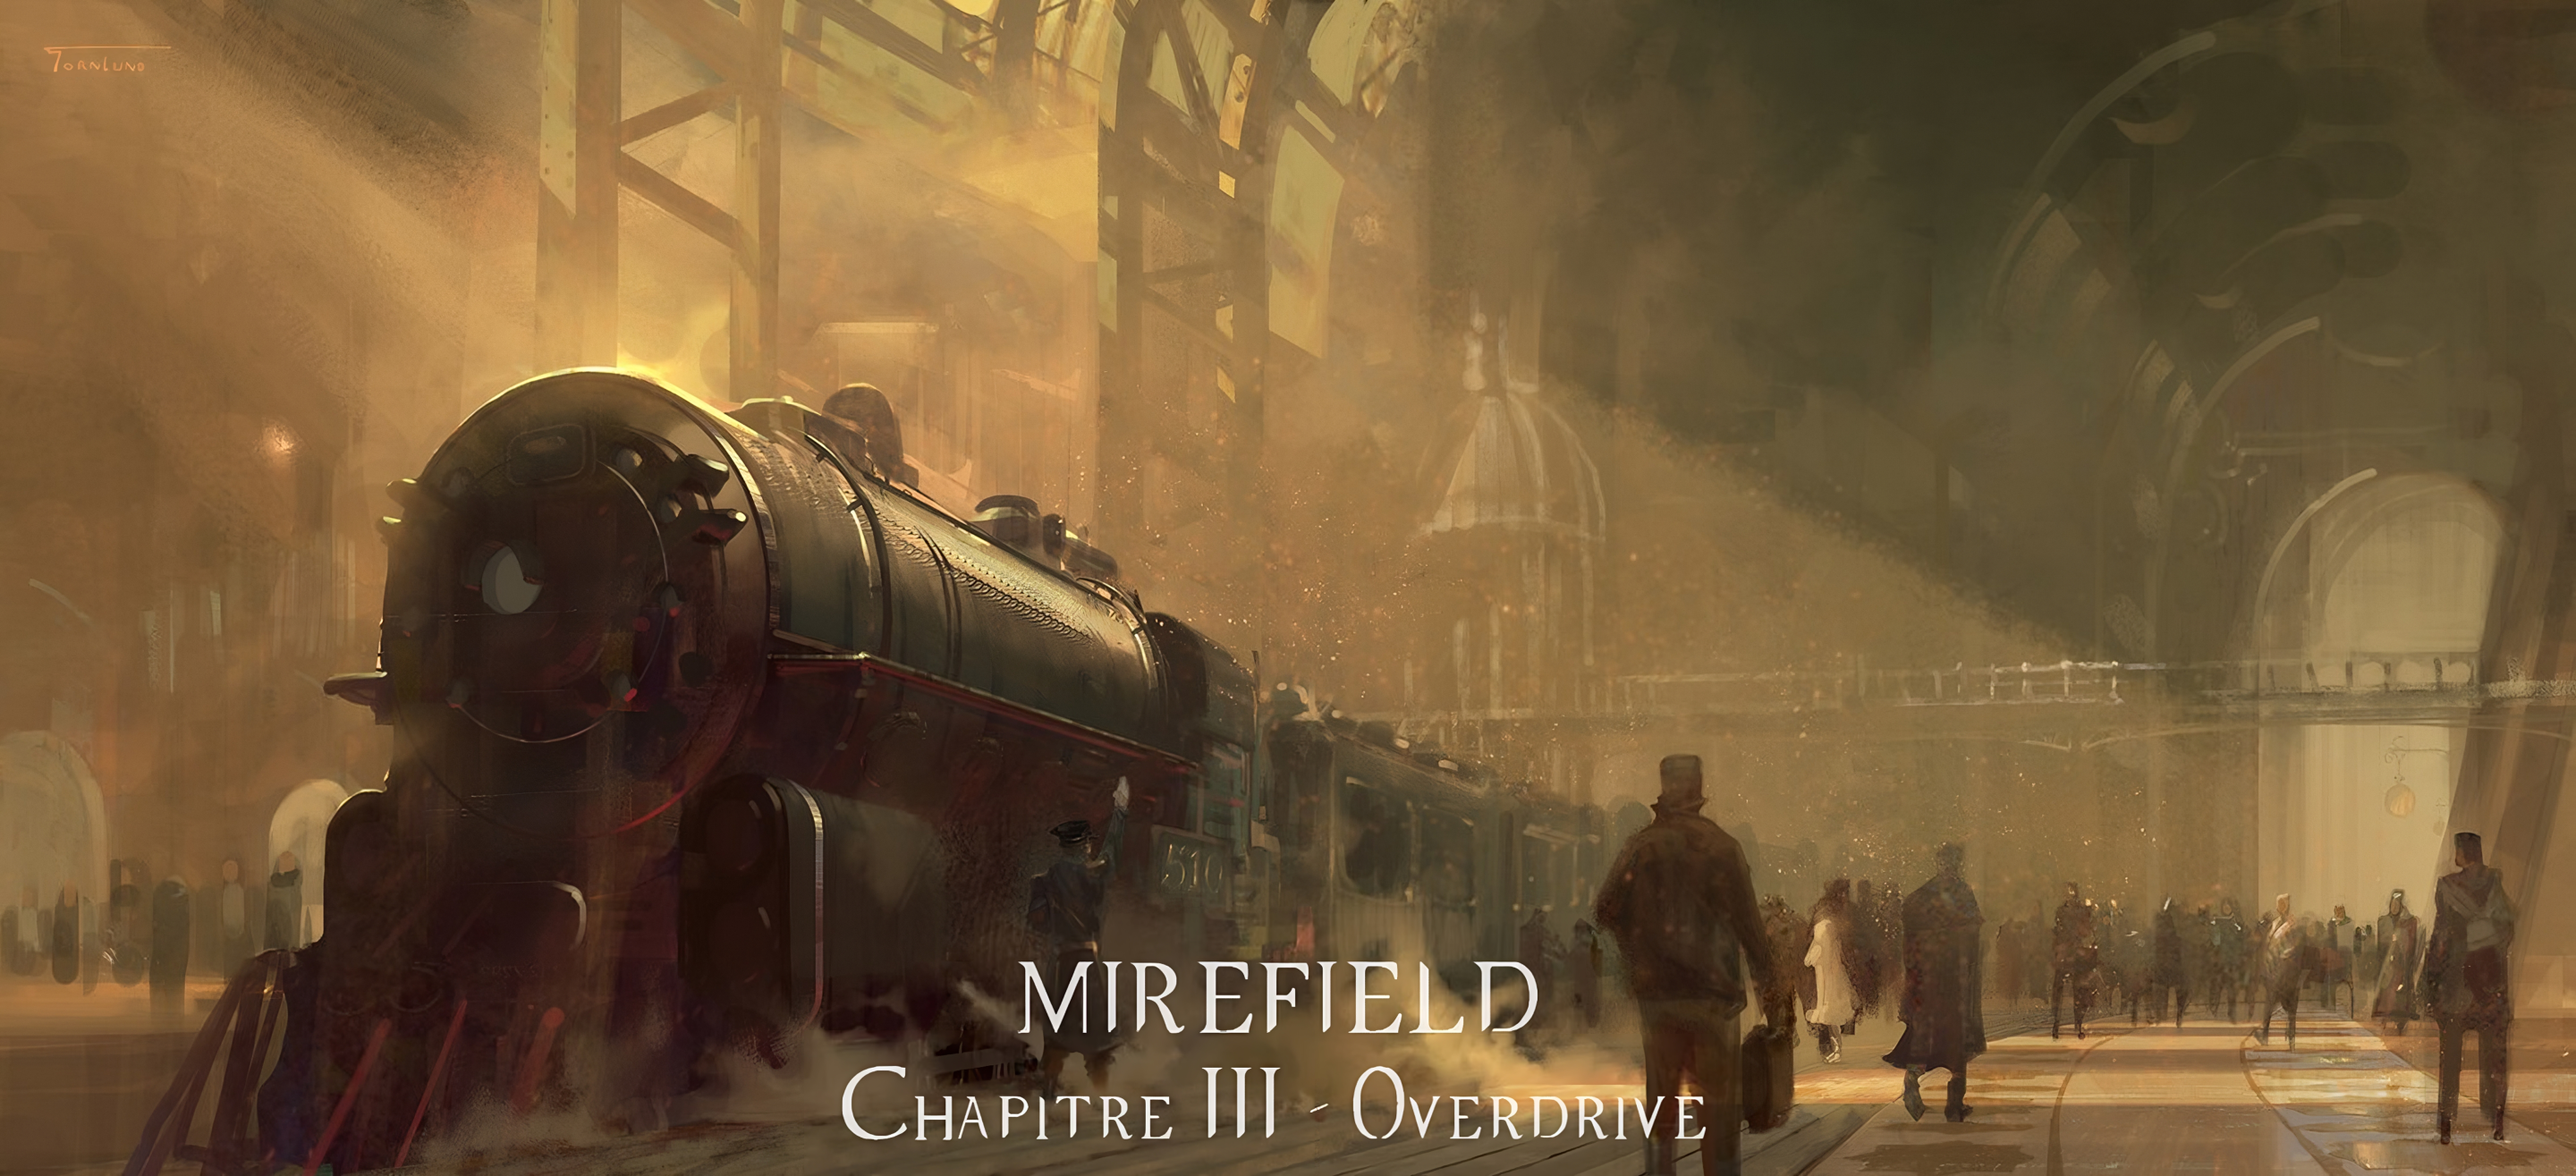 Mirefield - La cité des promesses